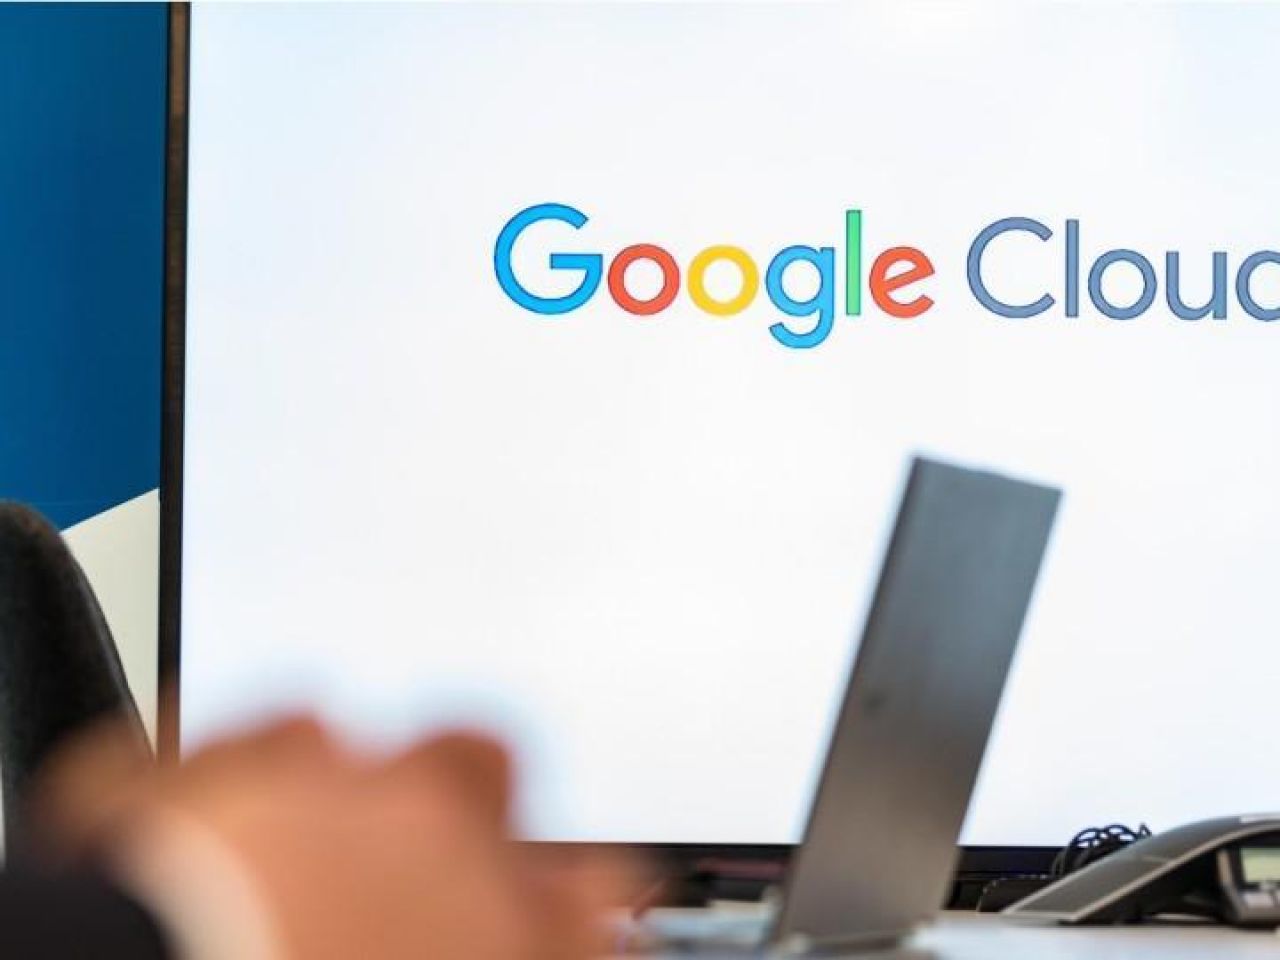 ノキア、ITインフラを「Google Cloud」に移行へ--複数年の契約